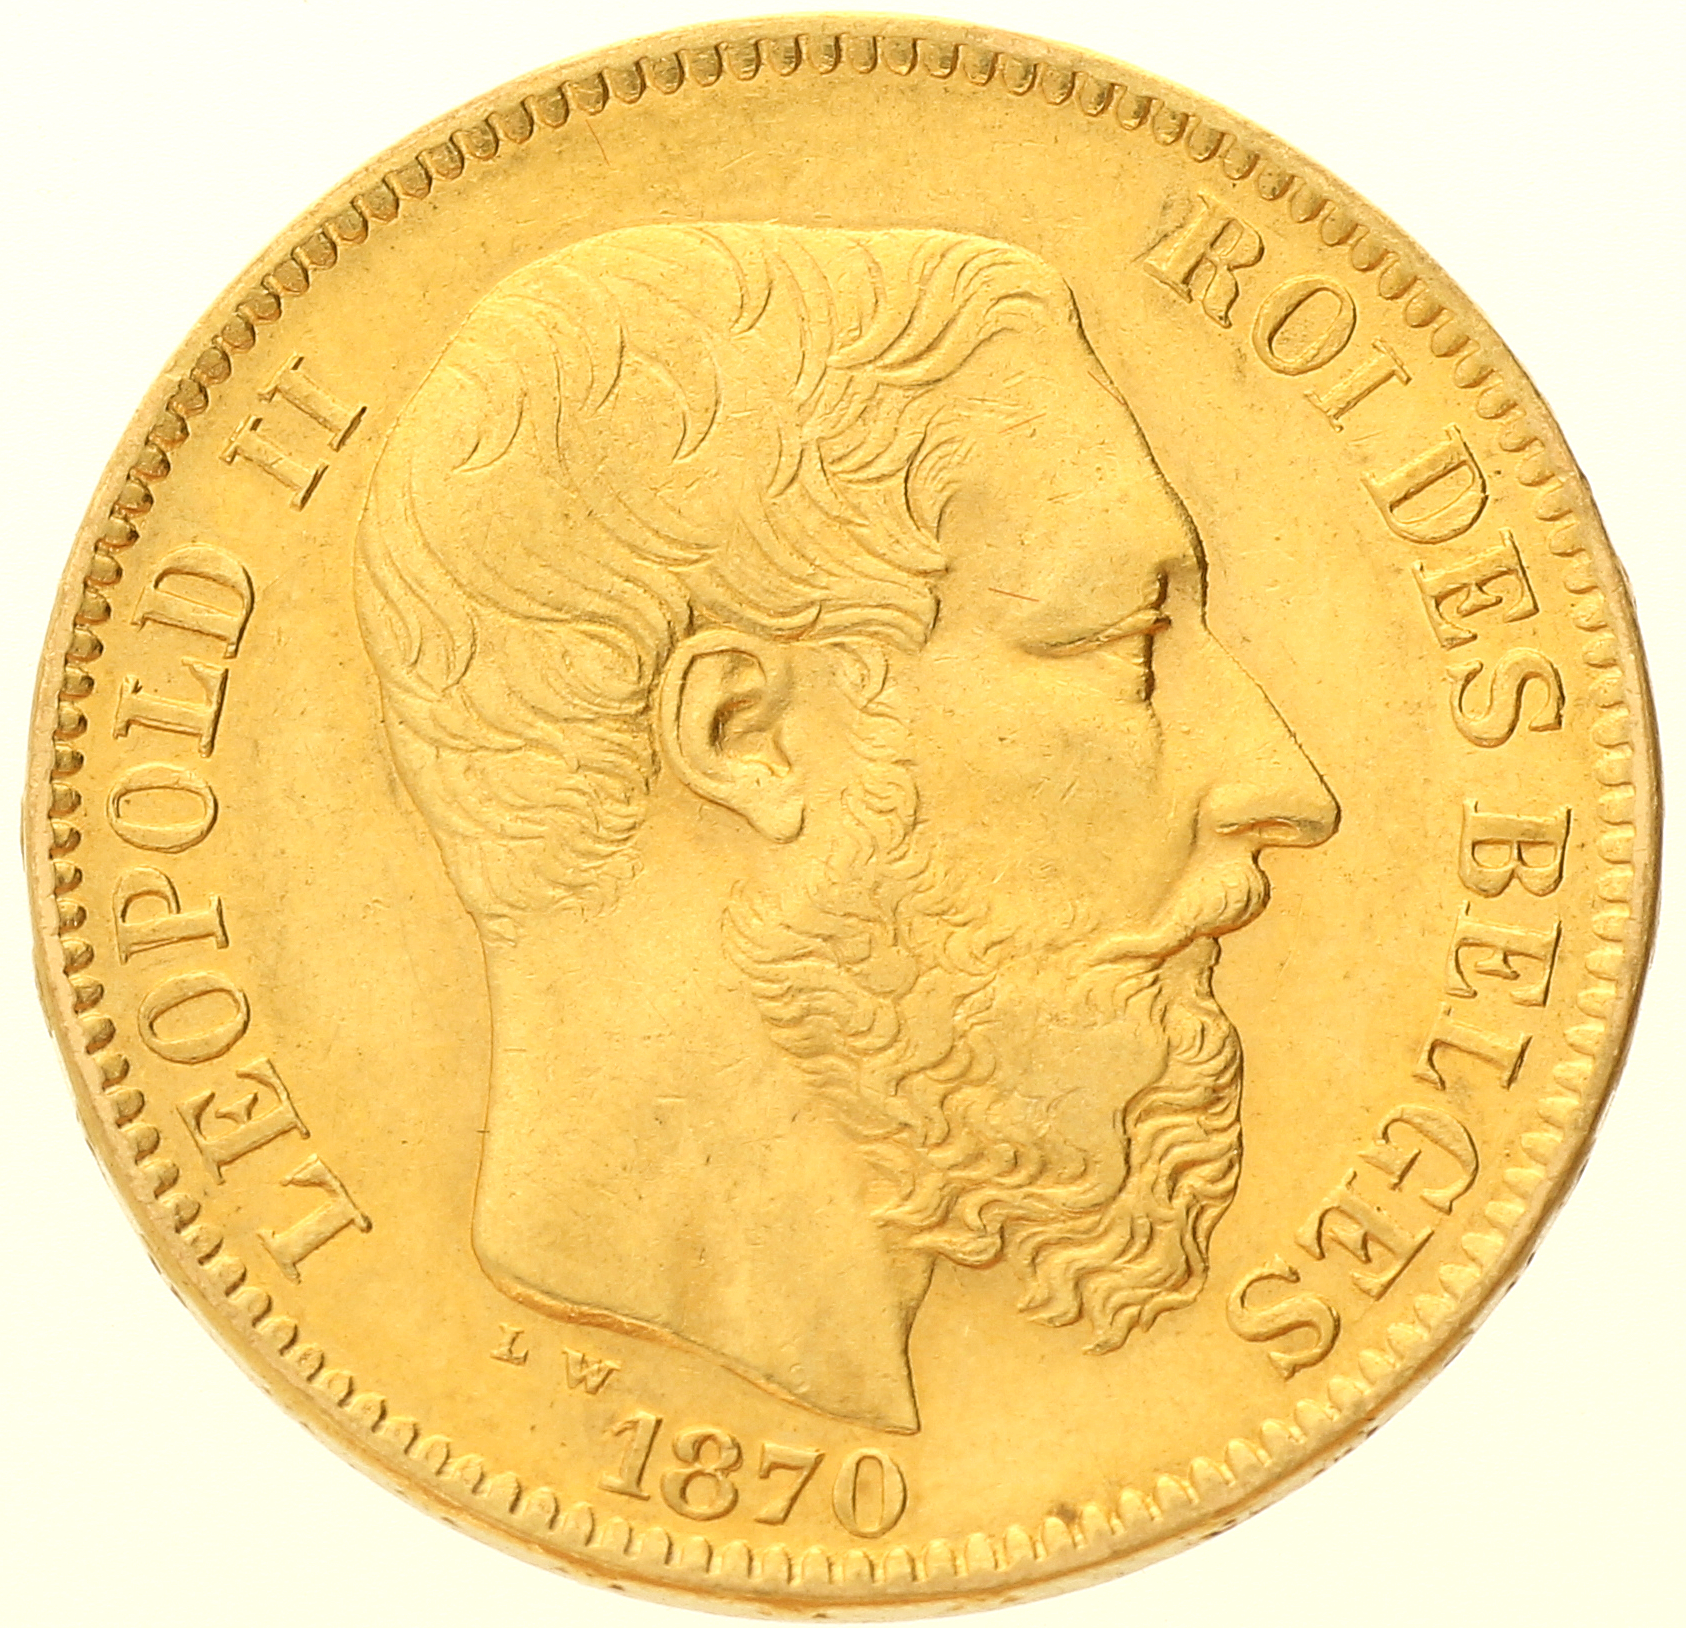 Belgium - 20 francs - 1870 - Léopold II